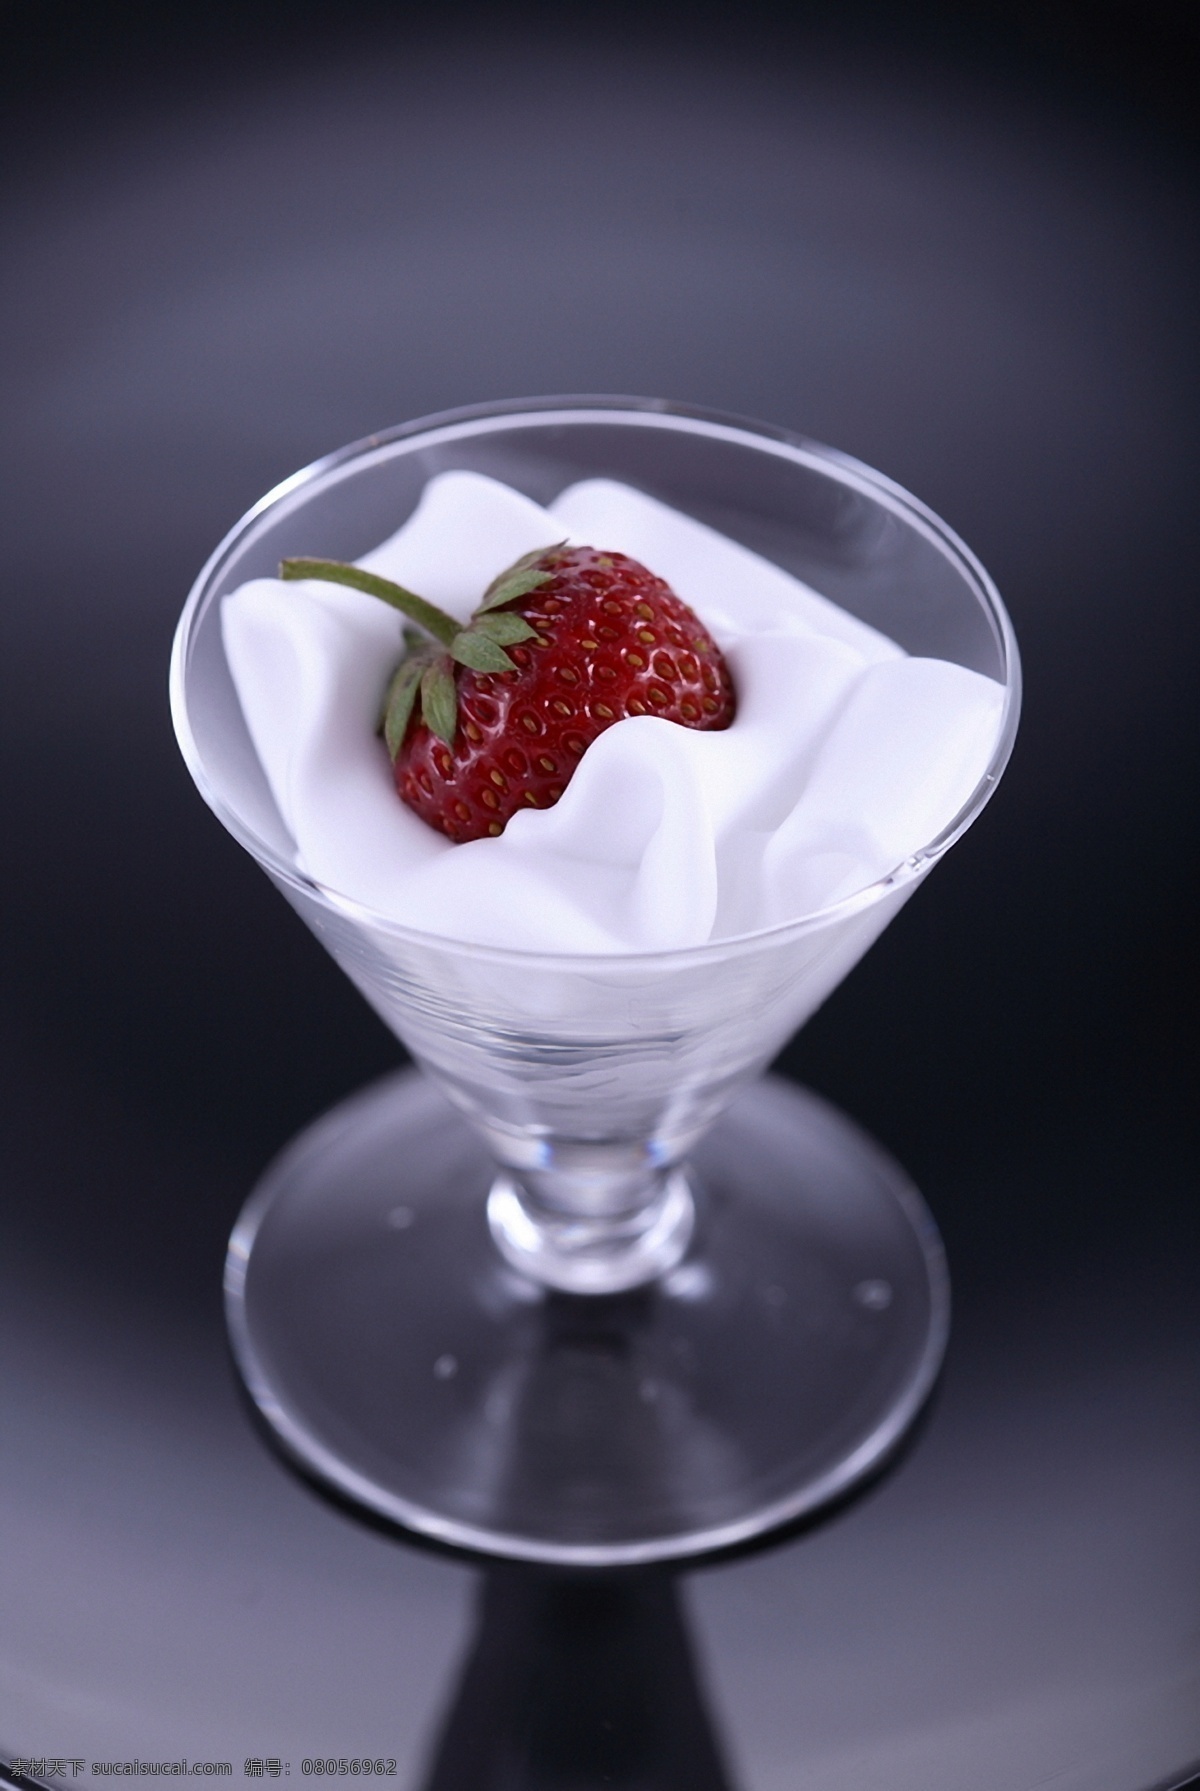 草莓 牛奶 生物世界 水果 新鲜水果 牛奶设计素材 牛奶模板下载 红草莓牛奶 红草莓 新鲜草莓 水果高清图片 psd源文件 餐饮素材